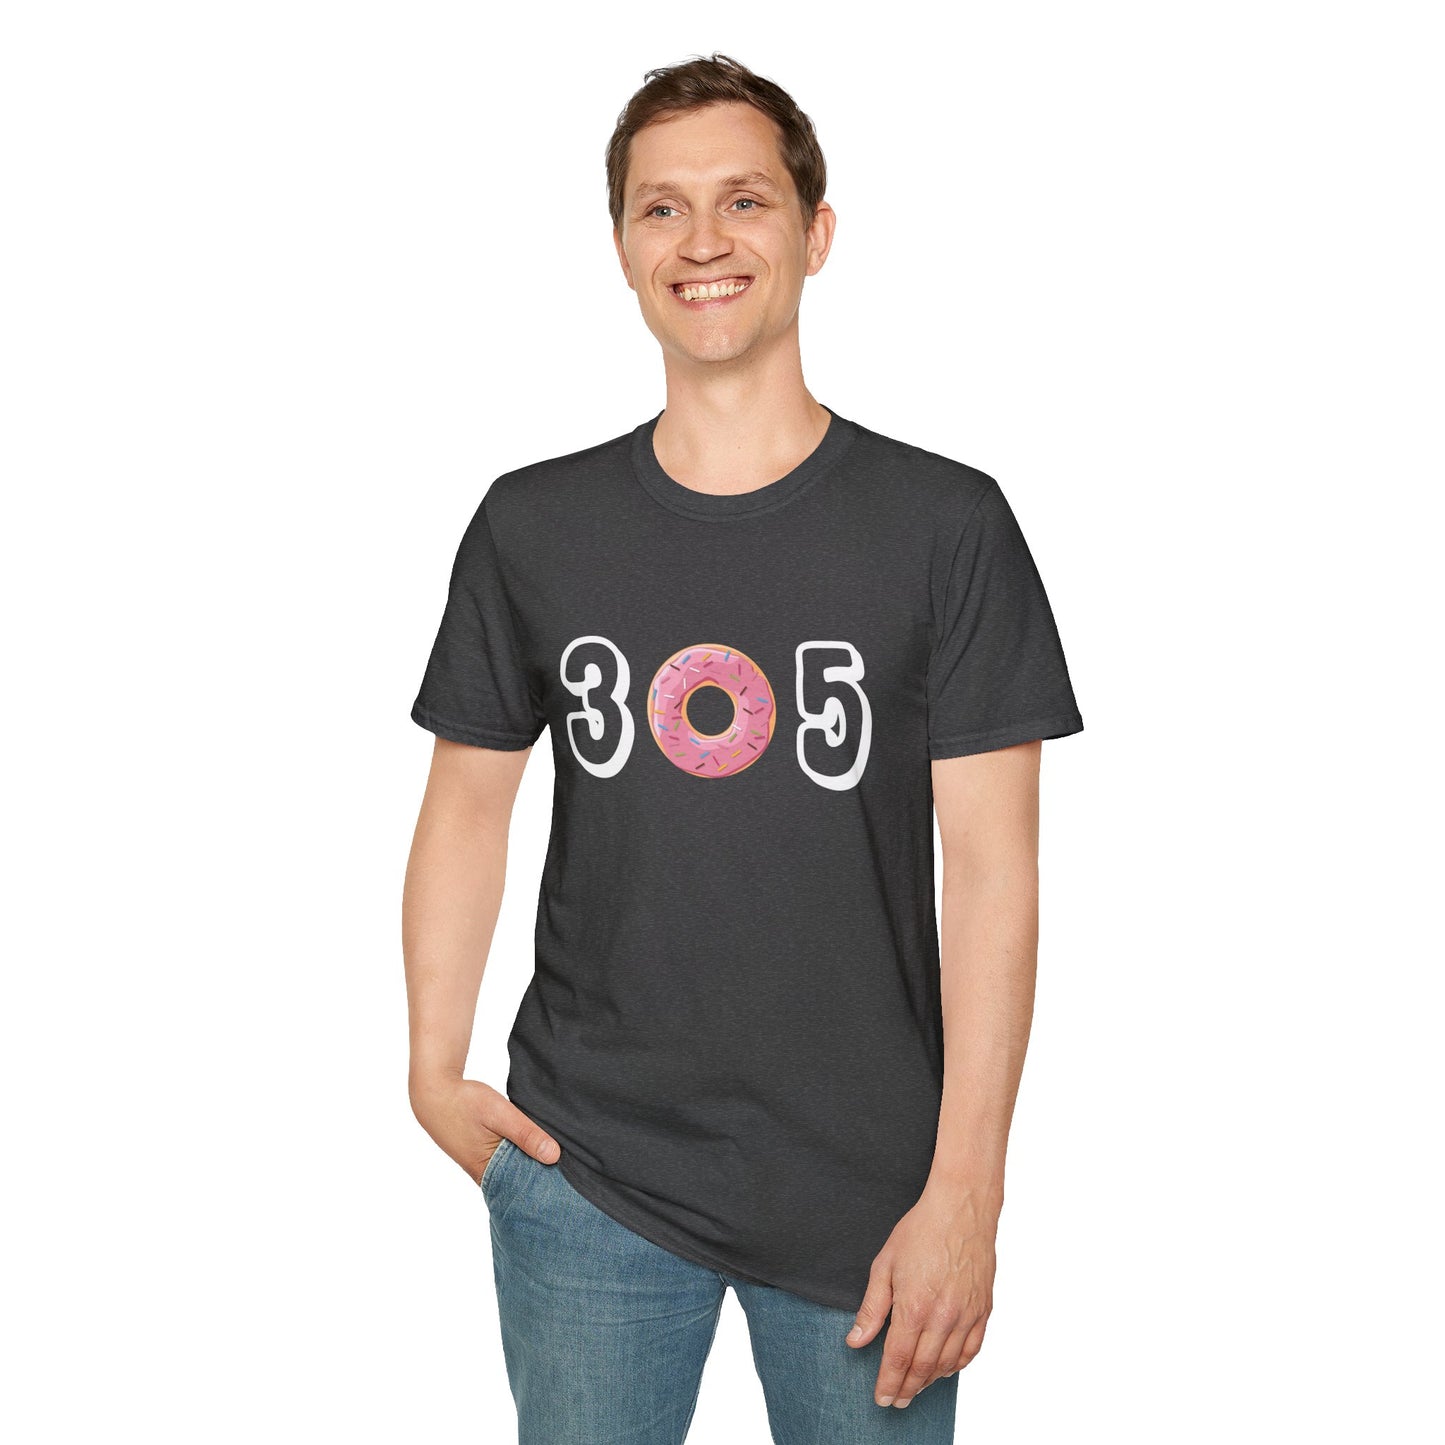 305 - Unisex Softstyle T-Shirt